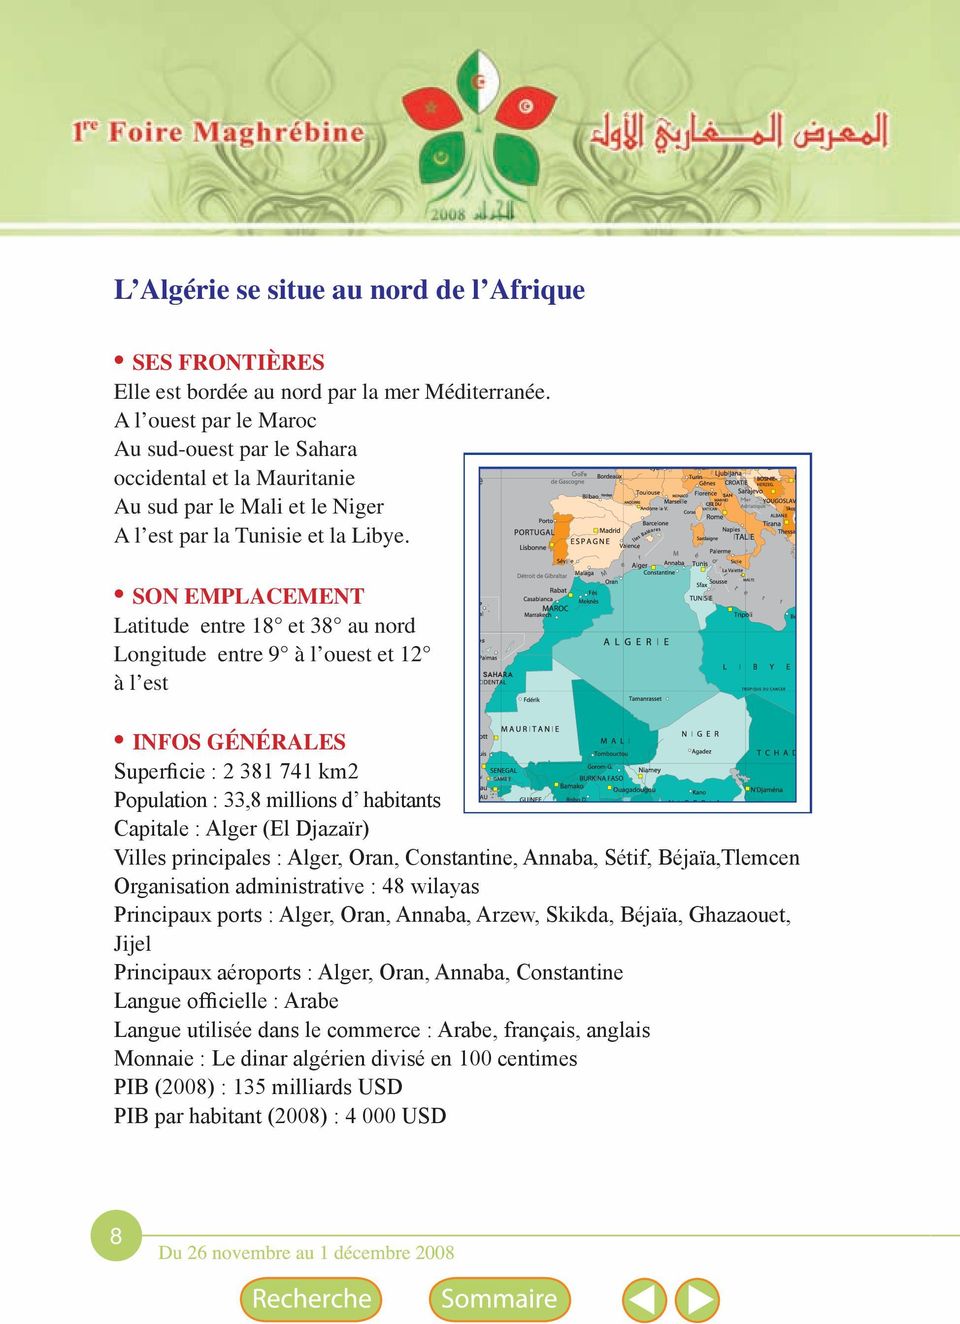 Son emplacement Latitude entre 18 et 38 au nord Longitude entre 9 à l ouest et 12 à l est infos générales Superficie : 2 381 741 km2 Population : 33,8 millions d habitants Capitale : Alger (El